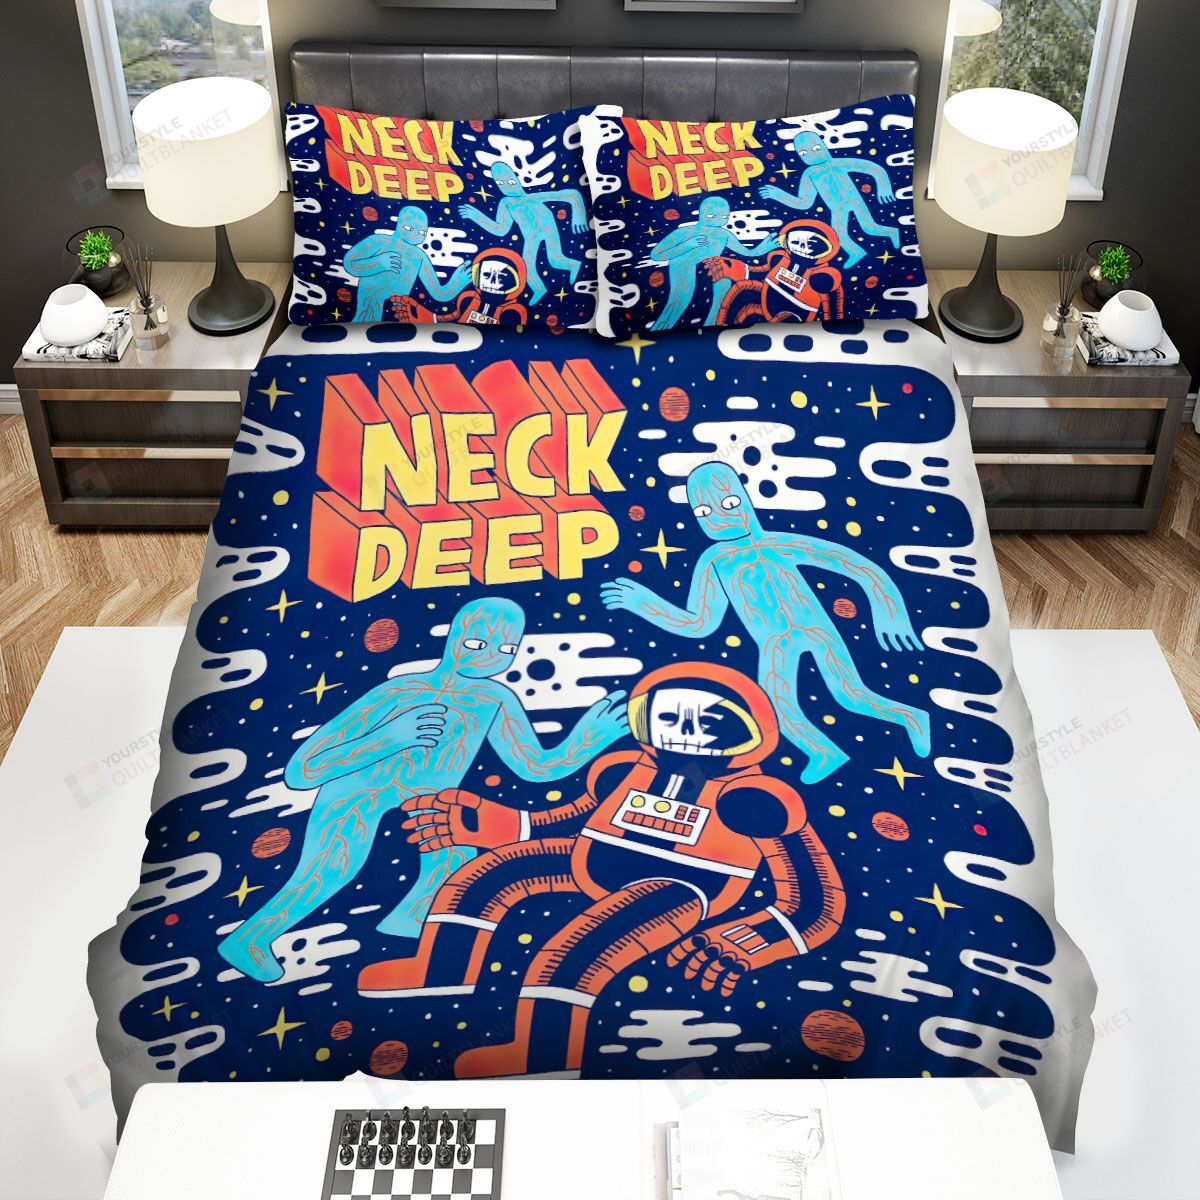 Neck Deep Bed Sheets Spread Comforter Duvet Cover Bedding Sets